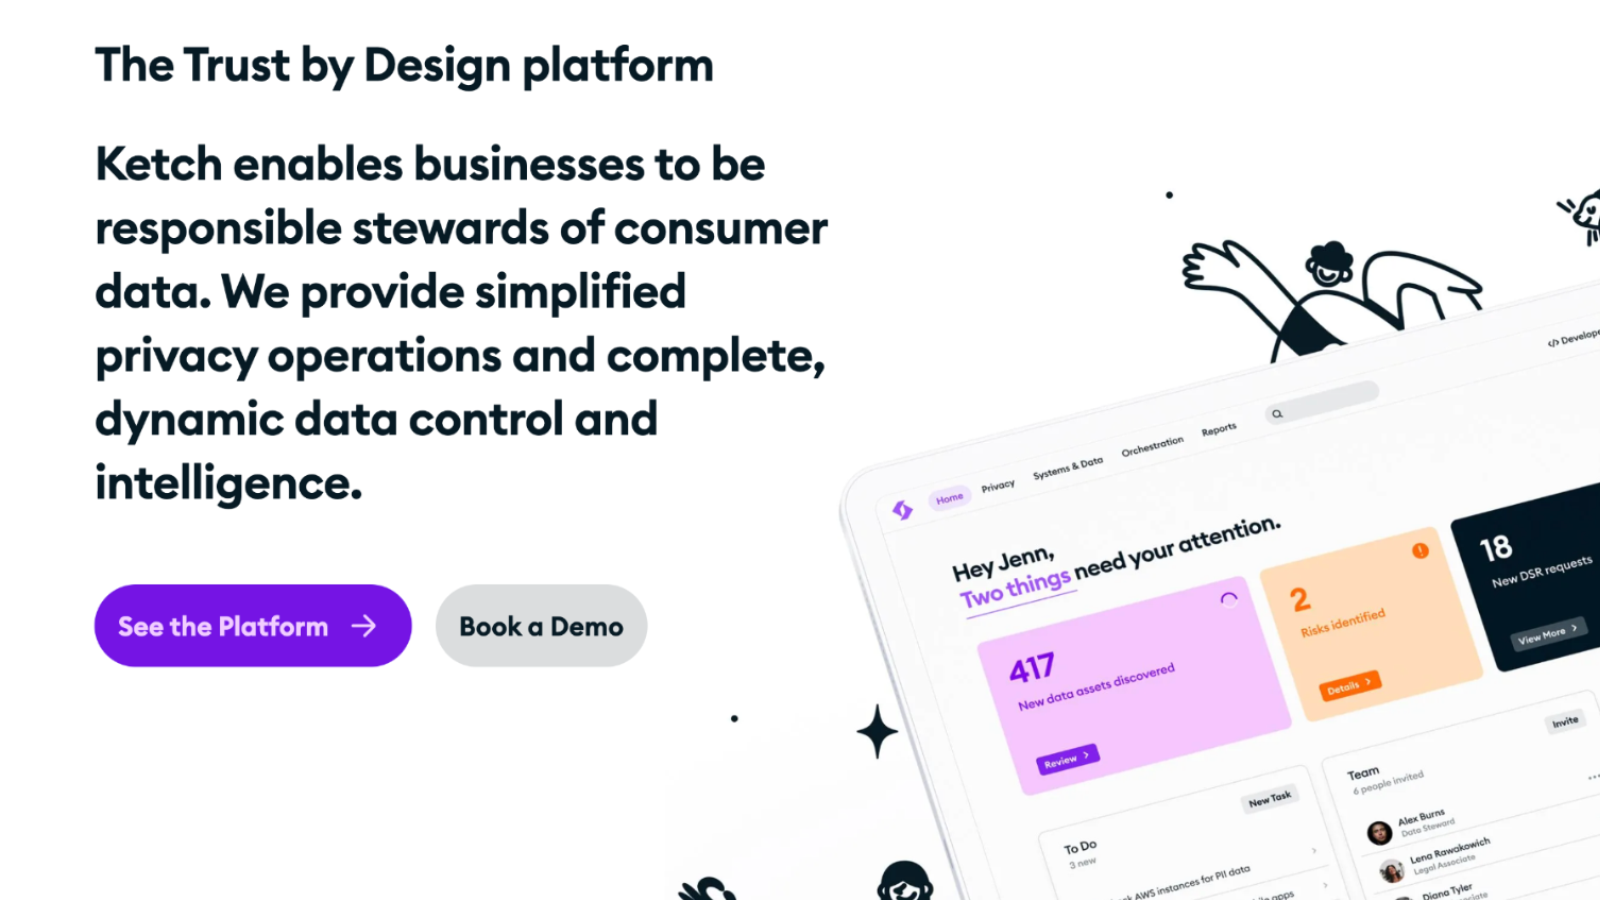 Ketch marknadsföringsskärm om Ketch Trust by Design Platform